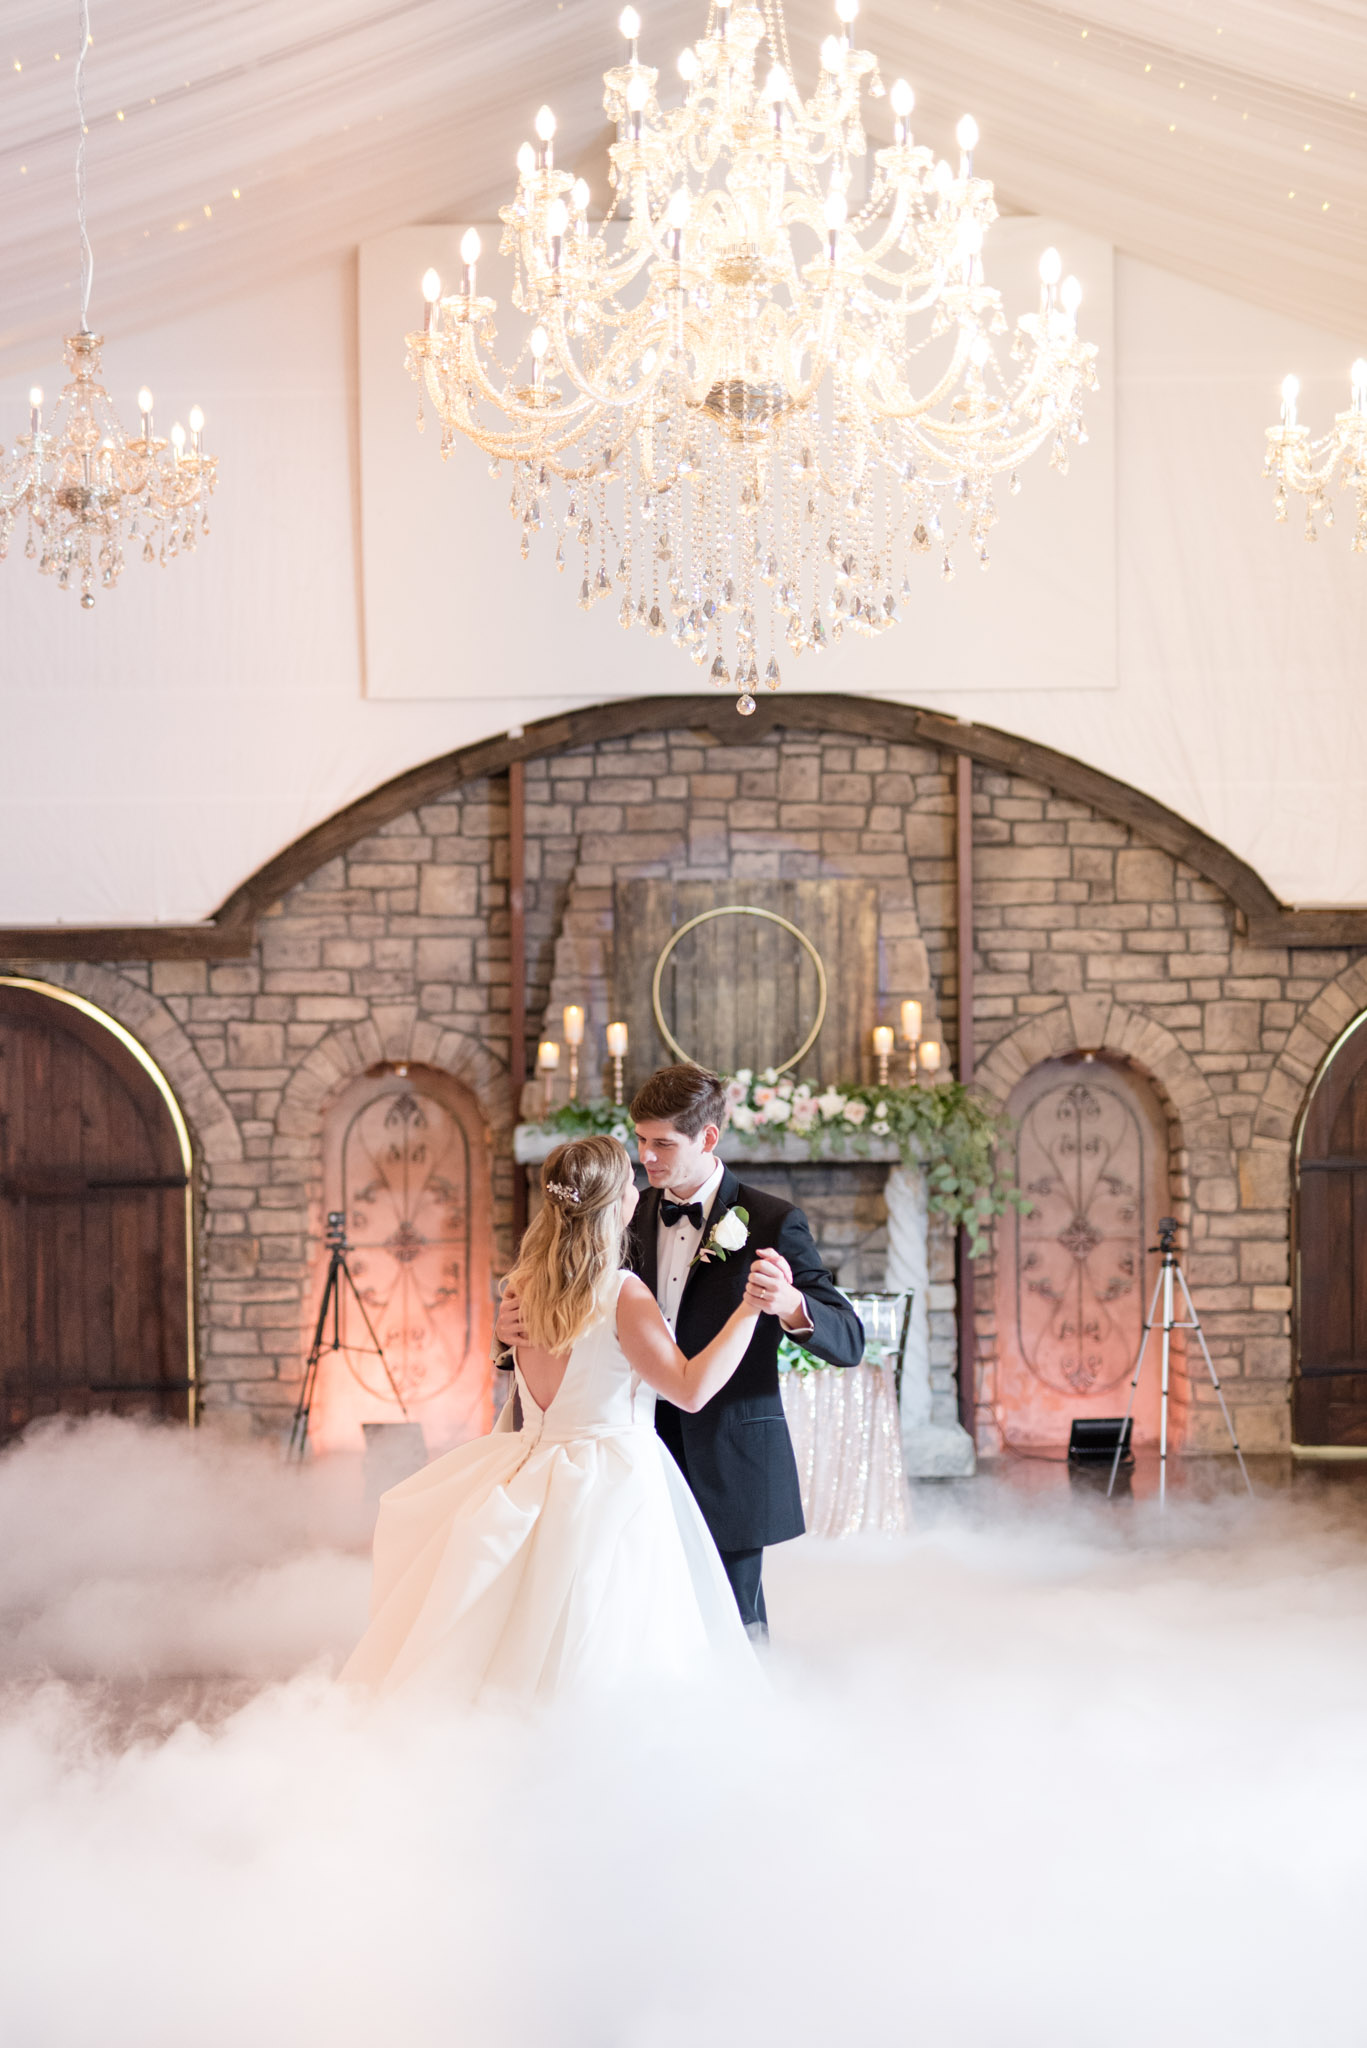 Bride and groom dance under chandelier.